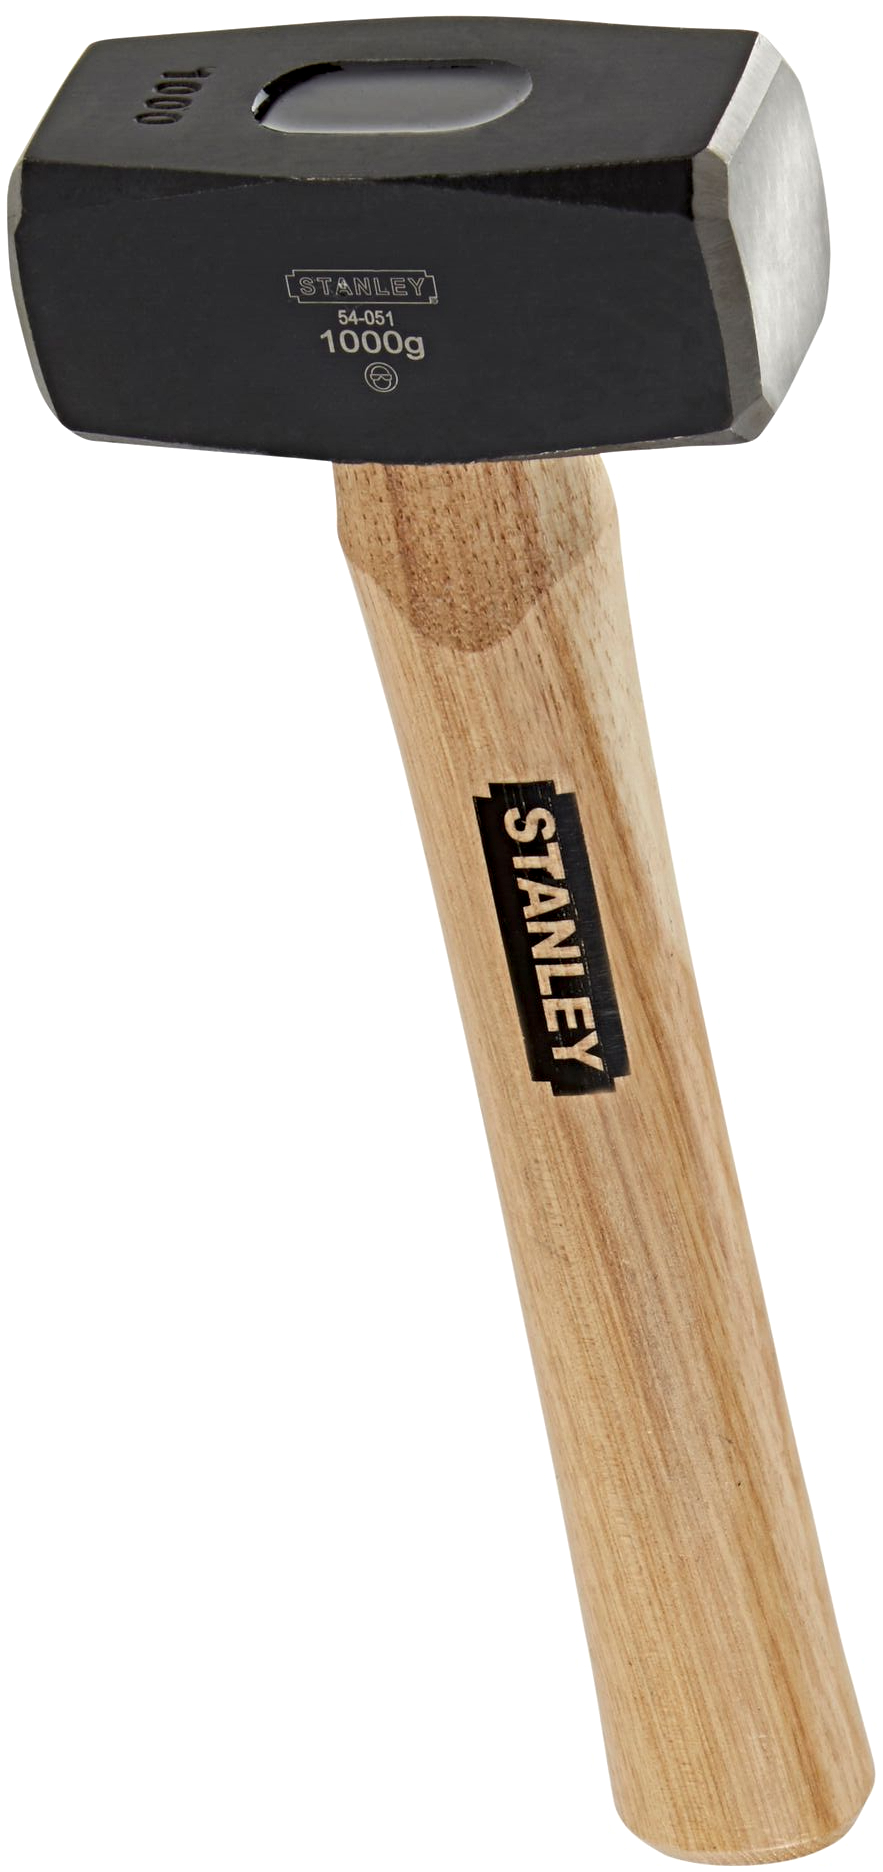 Levně STANLEY 1-54-051 palice s dřevěnou rukojetí 1000 g / 40 mm